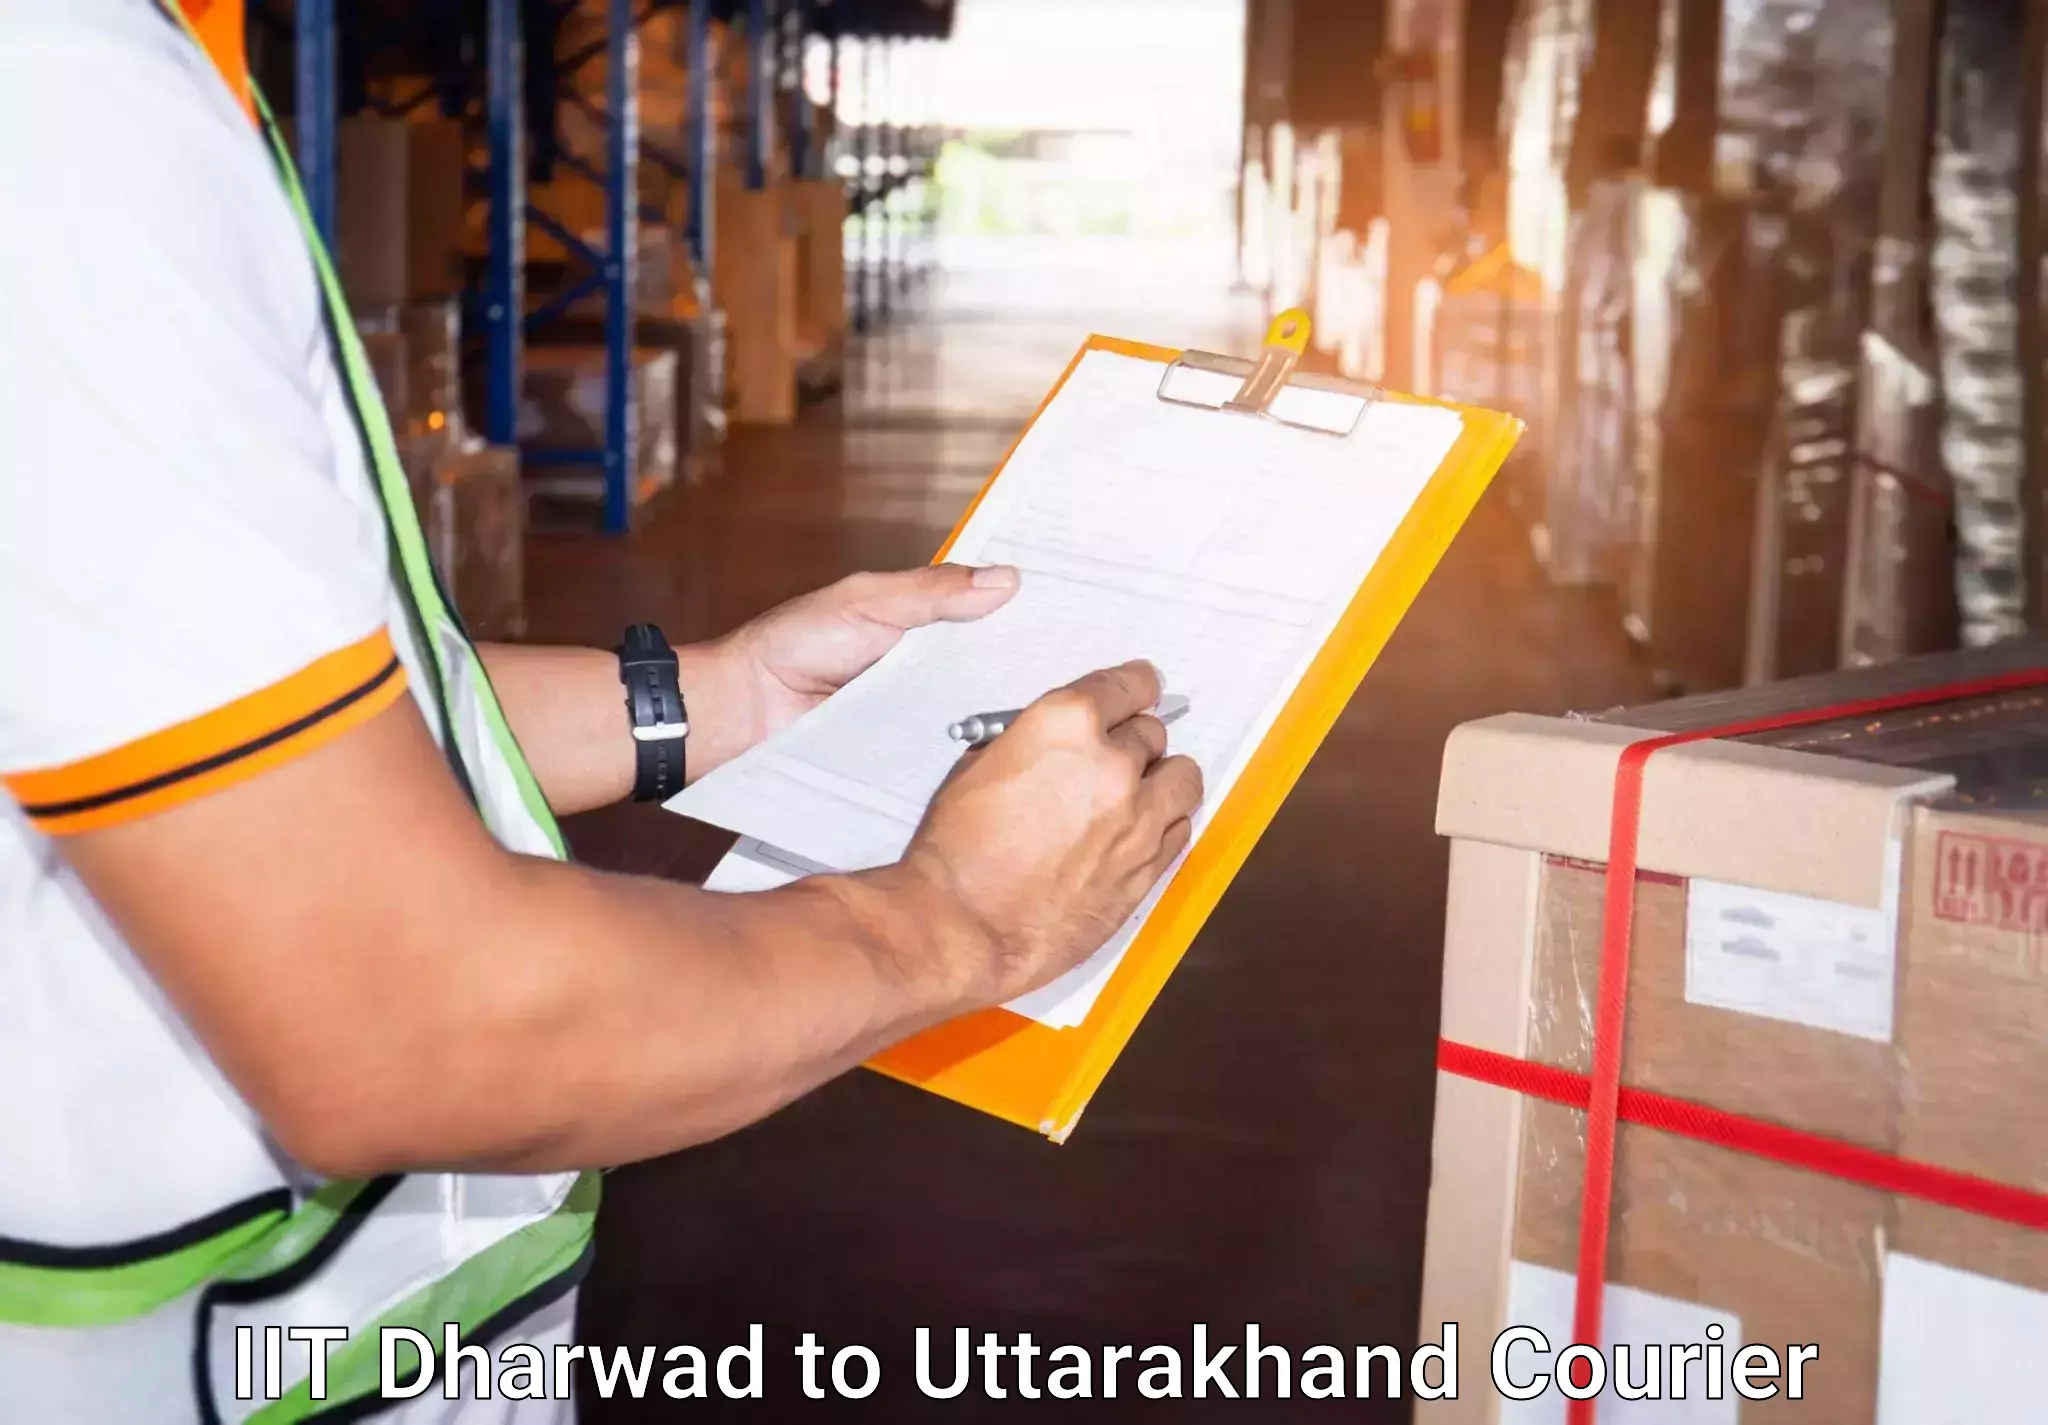 Baggage courier calculator IIT Dharwad to Dehradun